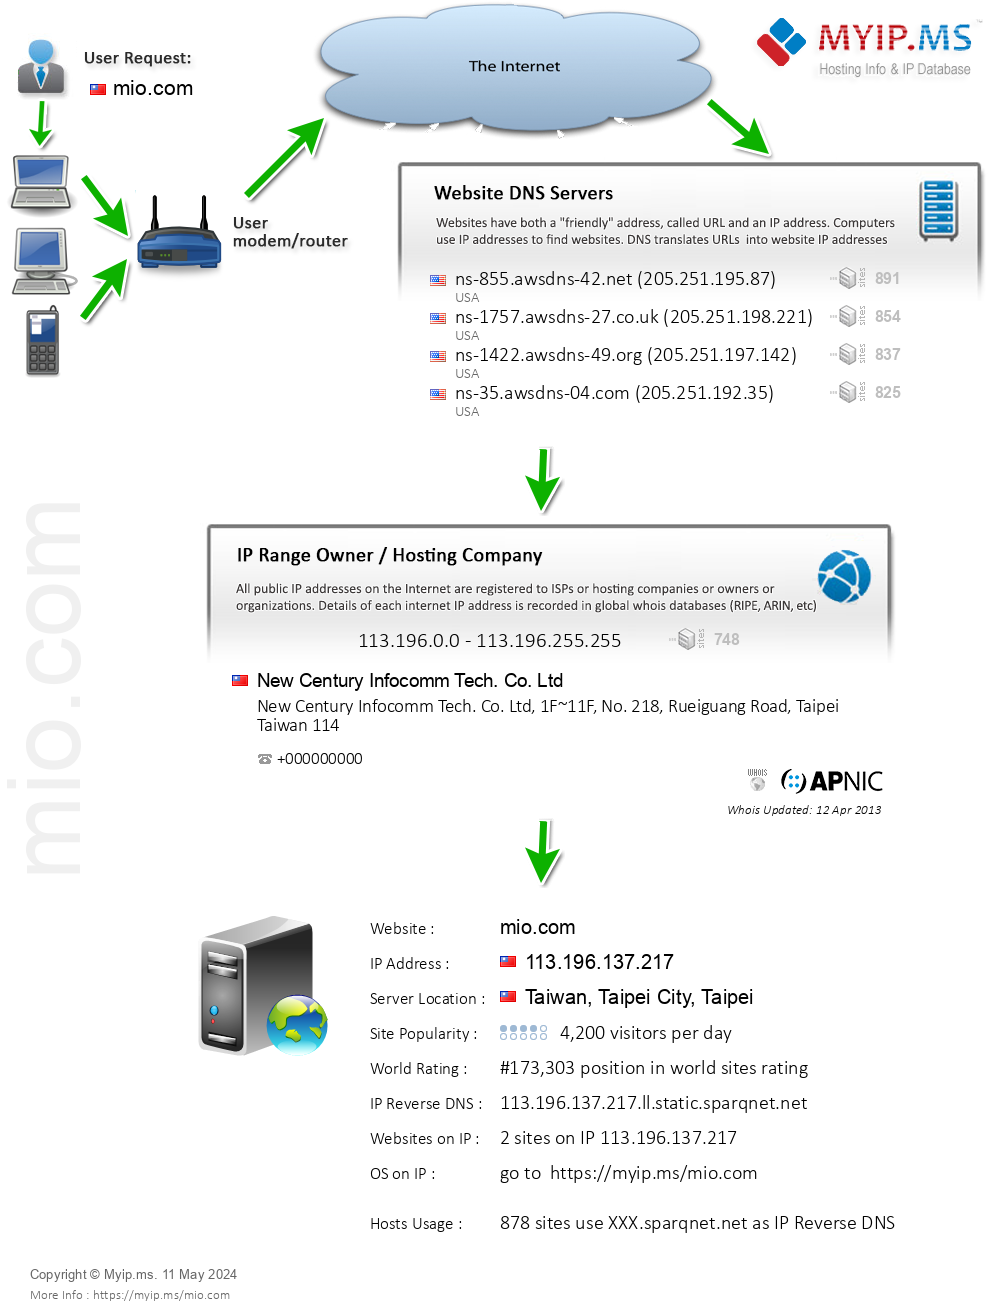 Mio.com - Website Hosting Visual IP Diagram